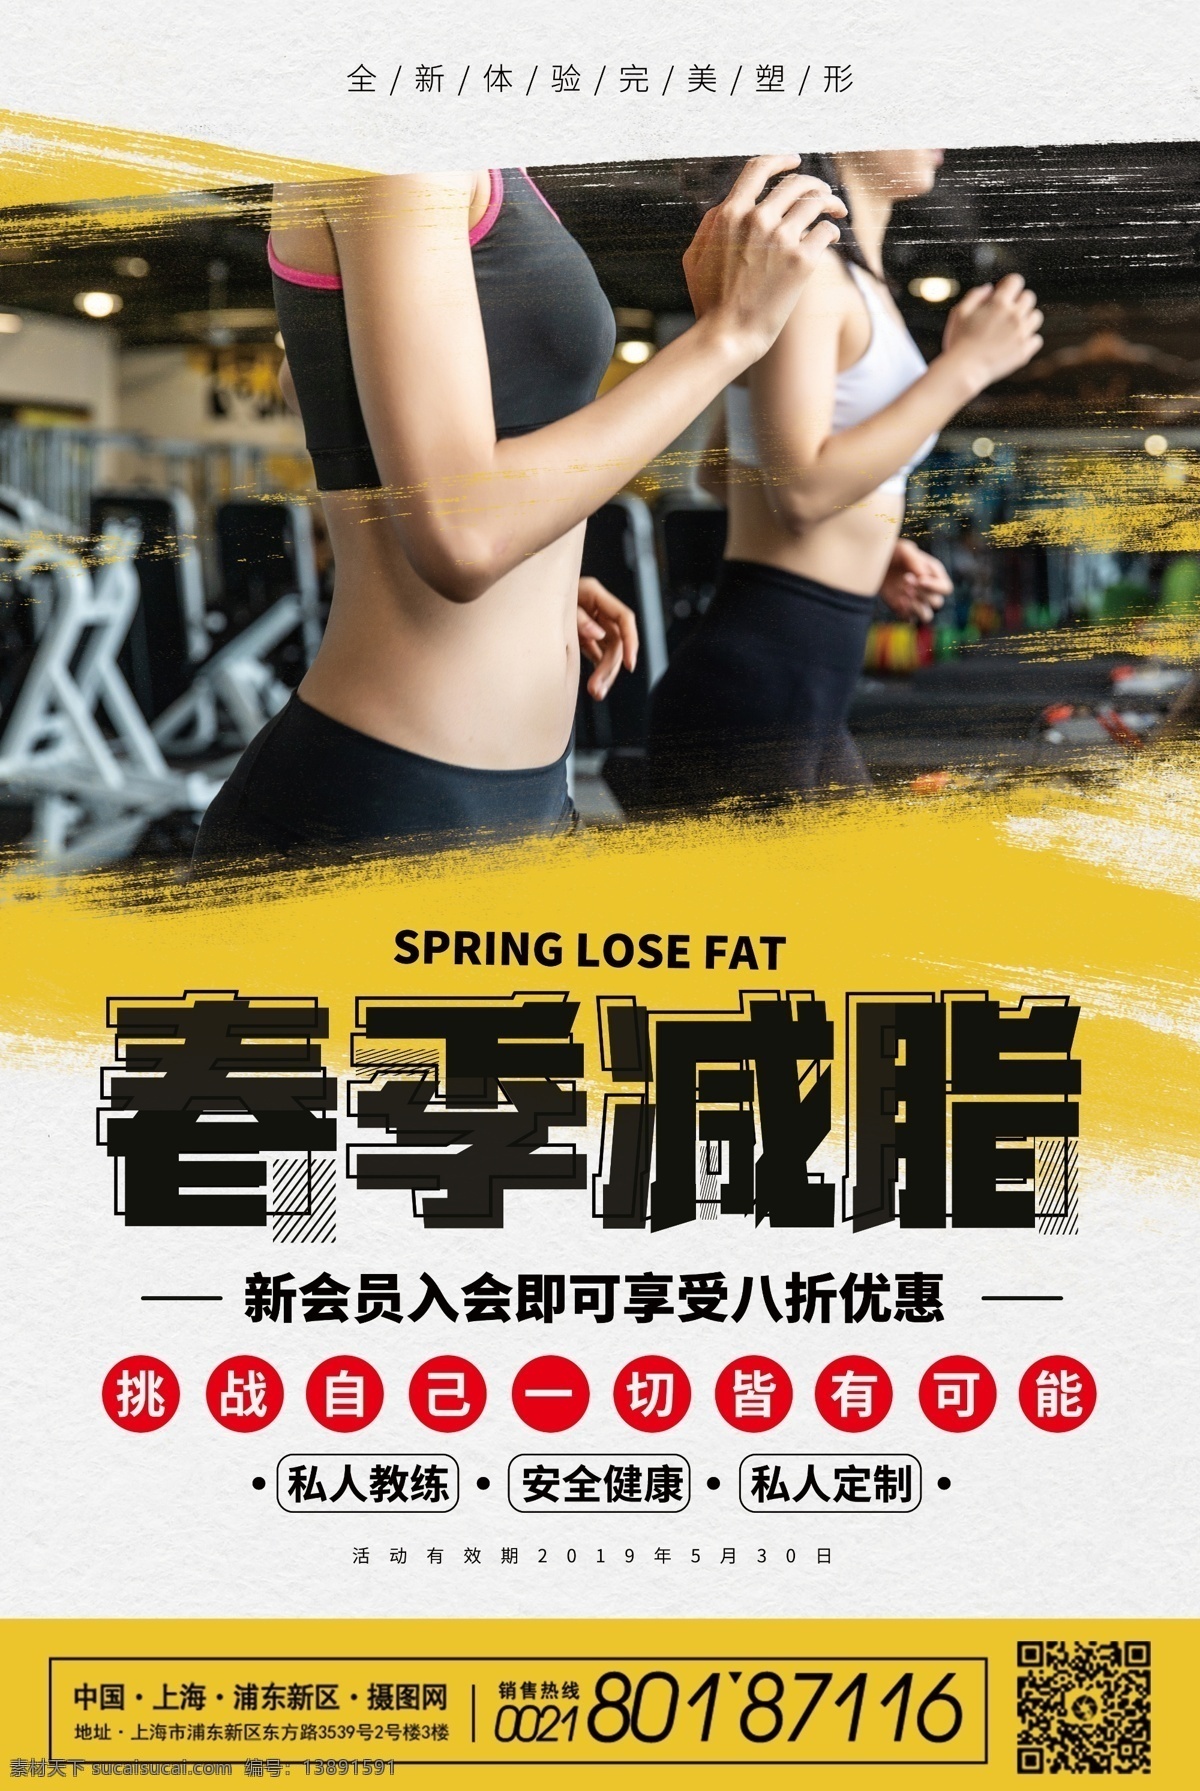 春季 减 脂 健身 会所 海报 春季减脂 减肥健身 会所招新 减脂 减肥 运动 春季健身 健身海报 锻炼 塑形 健身房